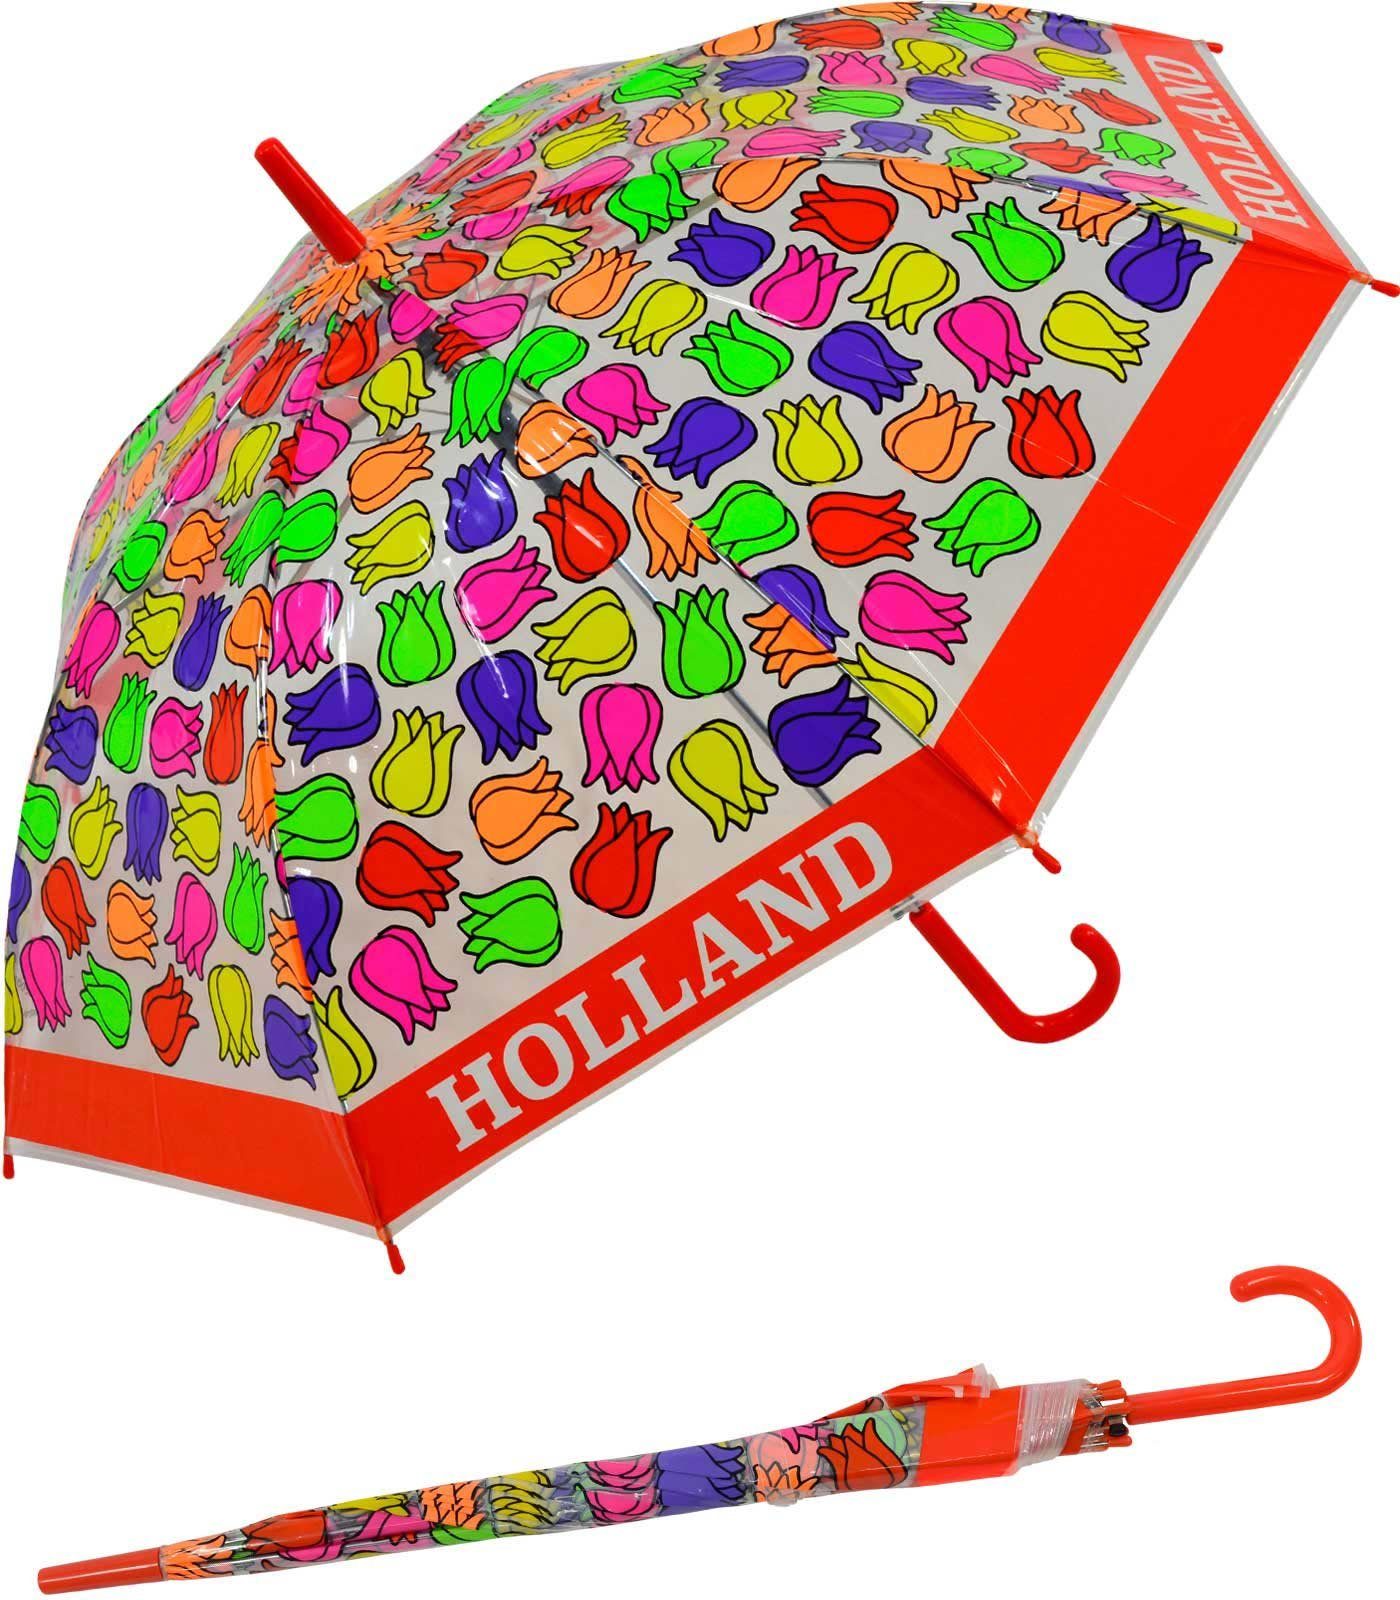 Impliva Langregenschirm Falconetti Kinderschirm bunt - rot durchsichtig Tulpen, transparent